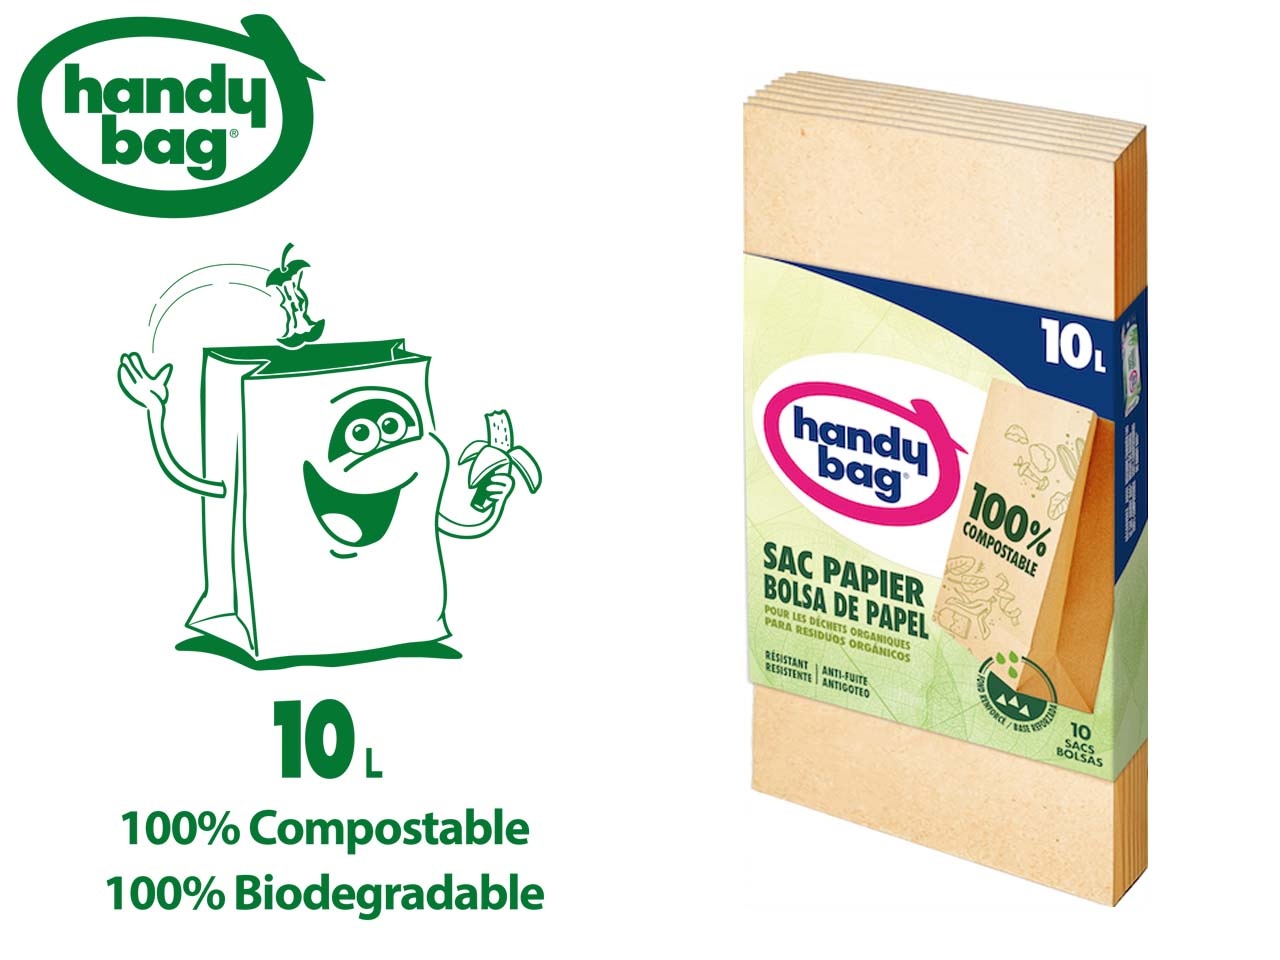 Handy Bag présente son sac poubelle 100% compostable et écologique